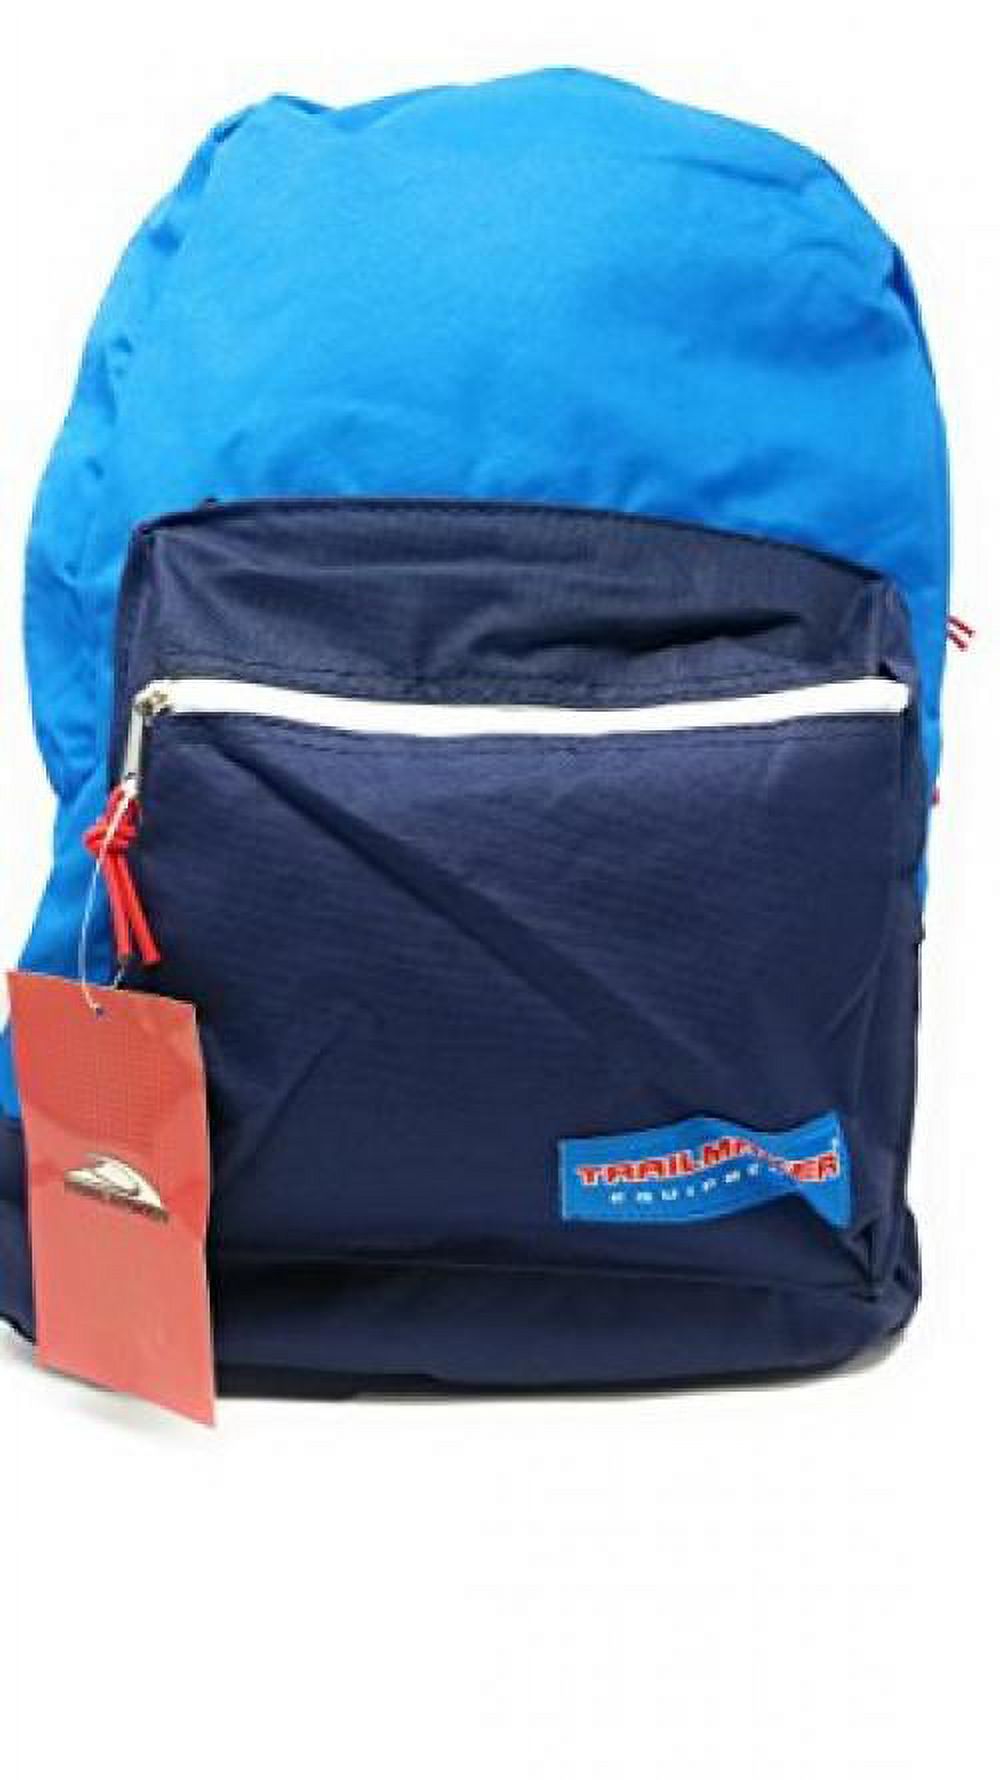 17in Trailmaker Backpack Book Bag BlueBlue - image 1 of 1